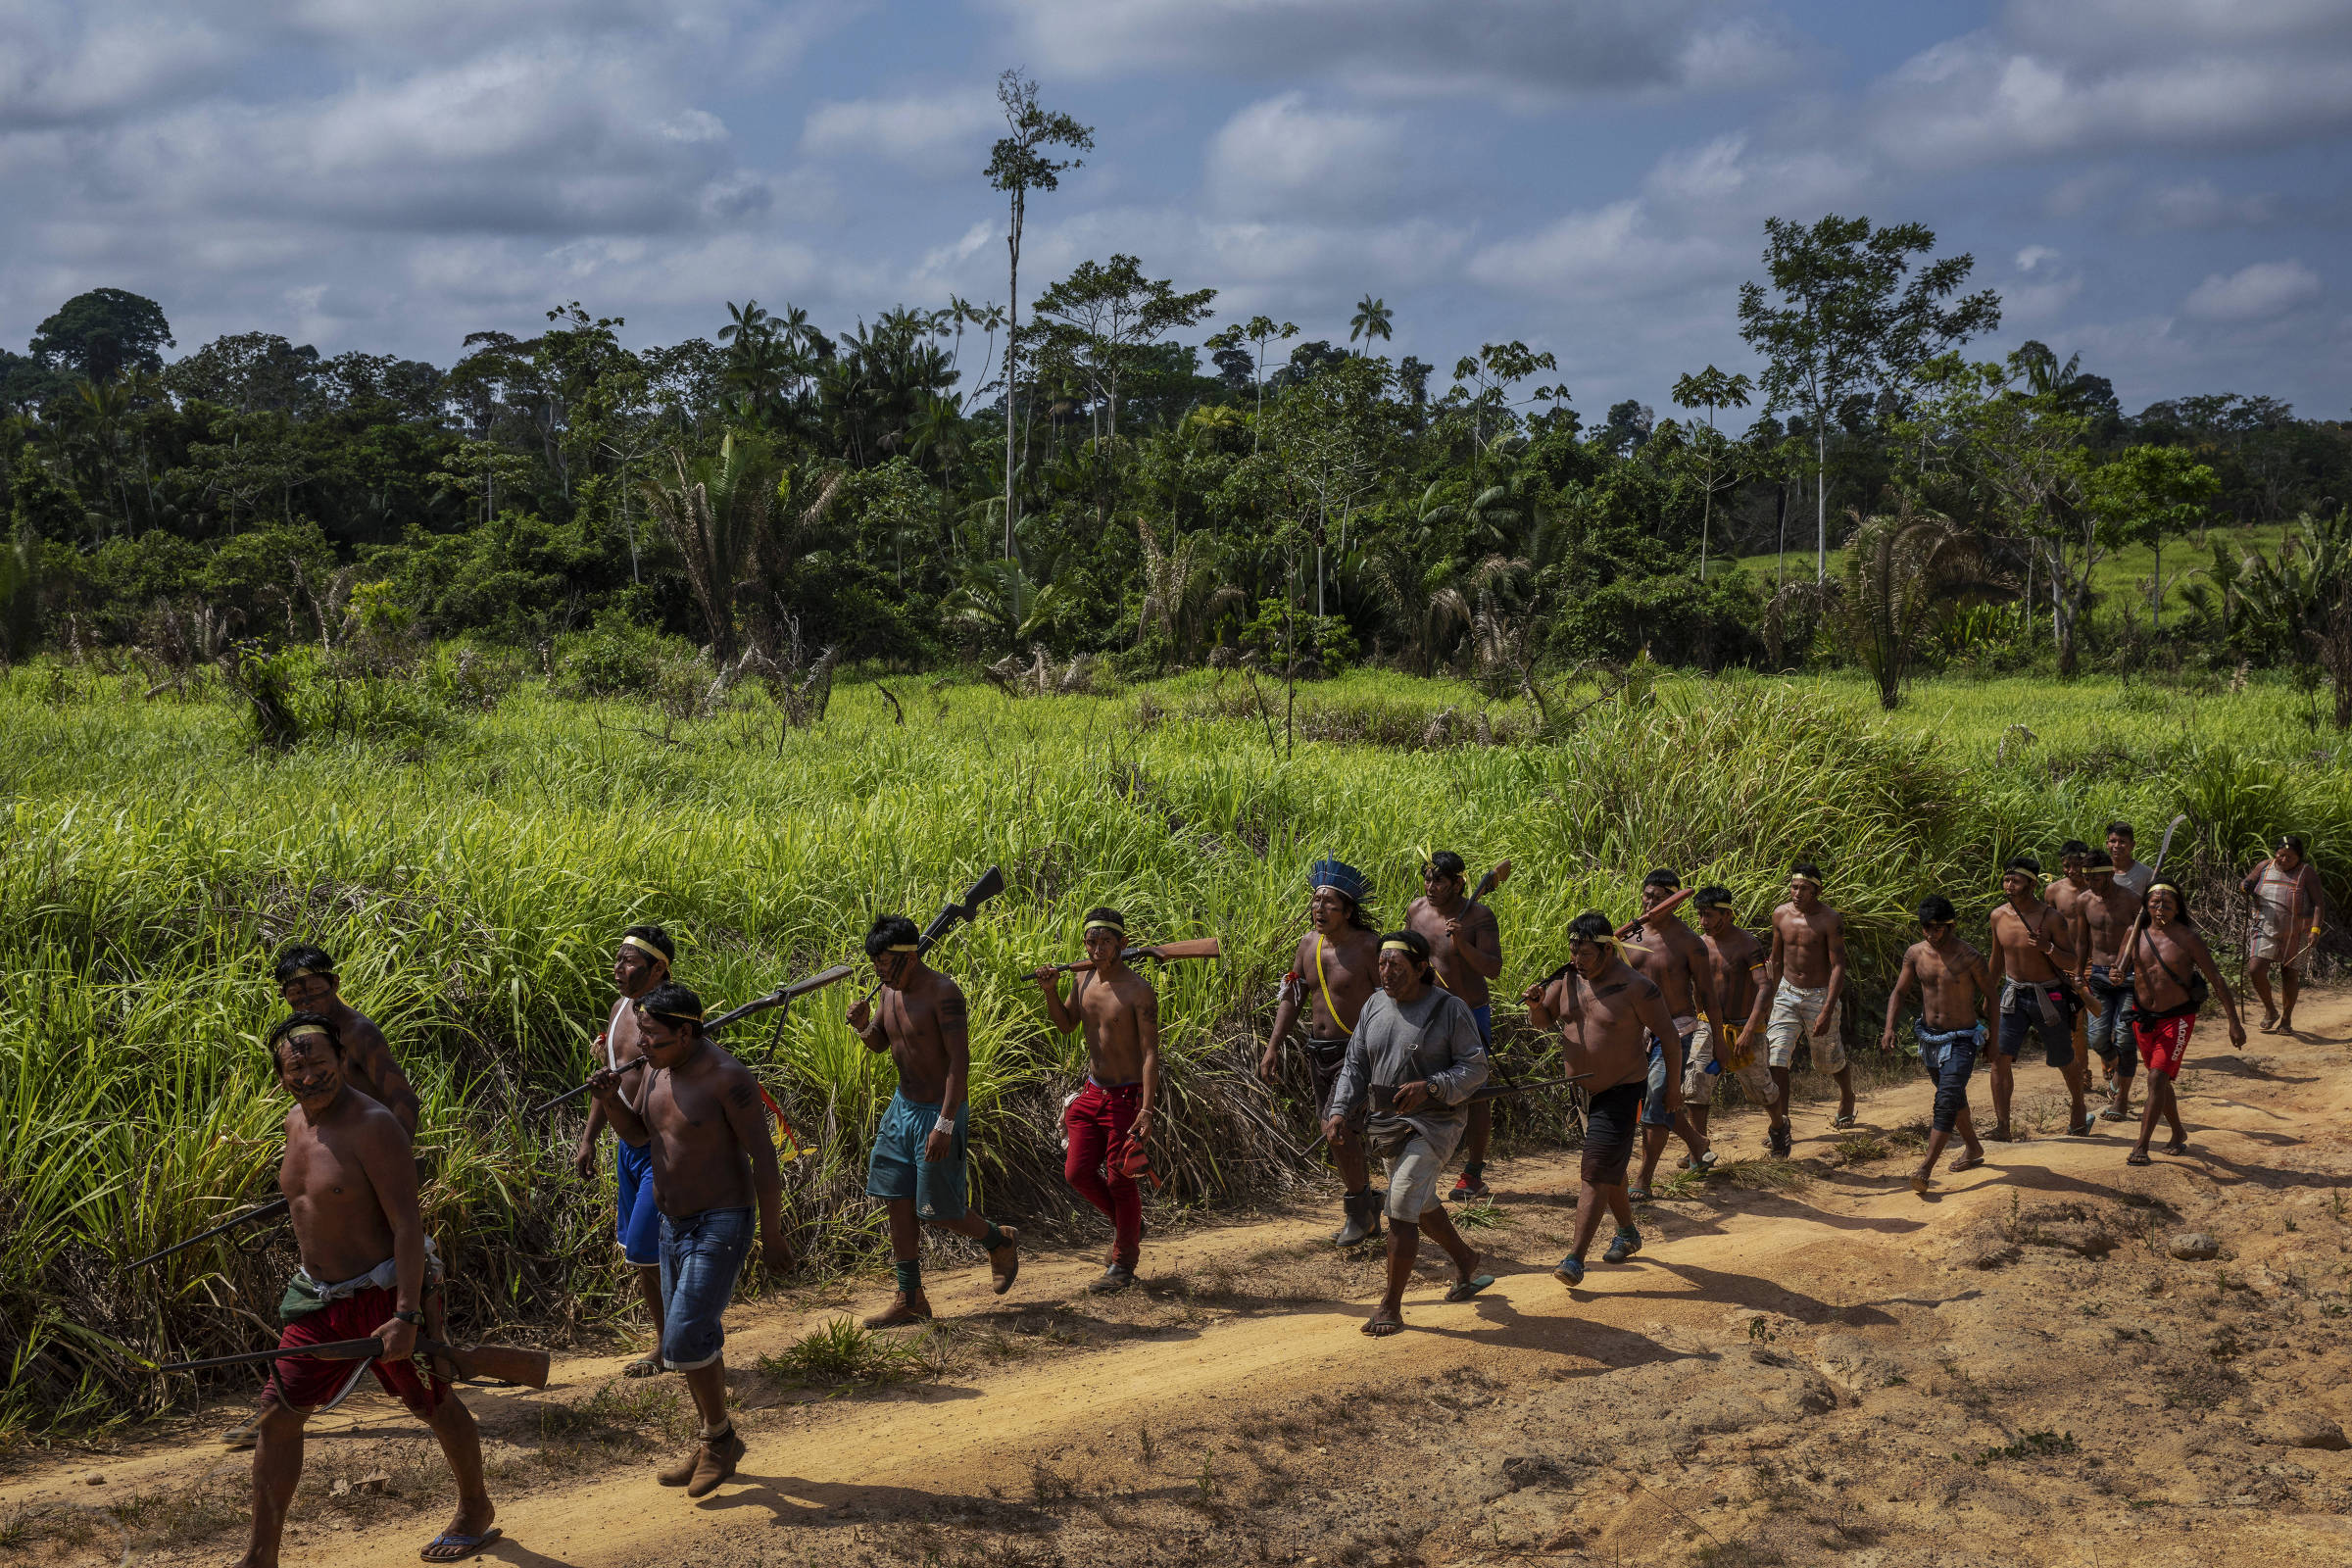 Guerreiros Xikrin chegam na aldeia Rapko após expedição na floresta para retirar invasores da Terra Indígena Trincheira Bacajá, no Pará, que teve parte de sua área invadida e desmatada por grileiros 